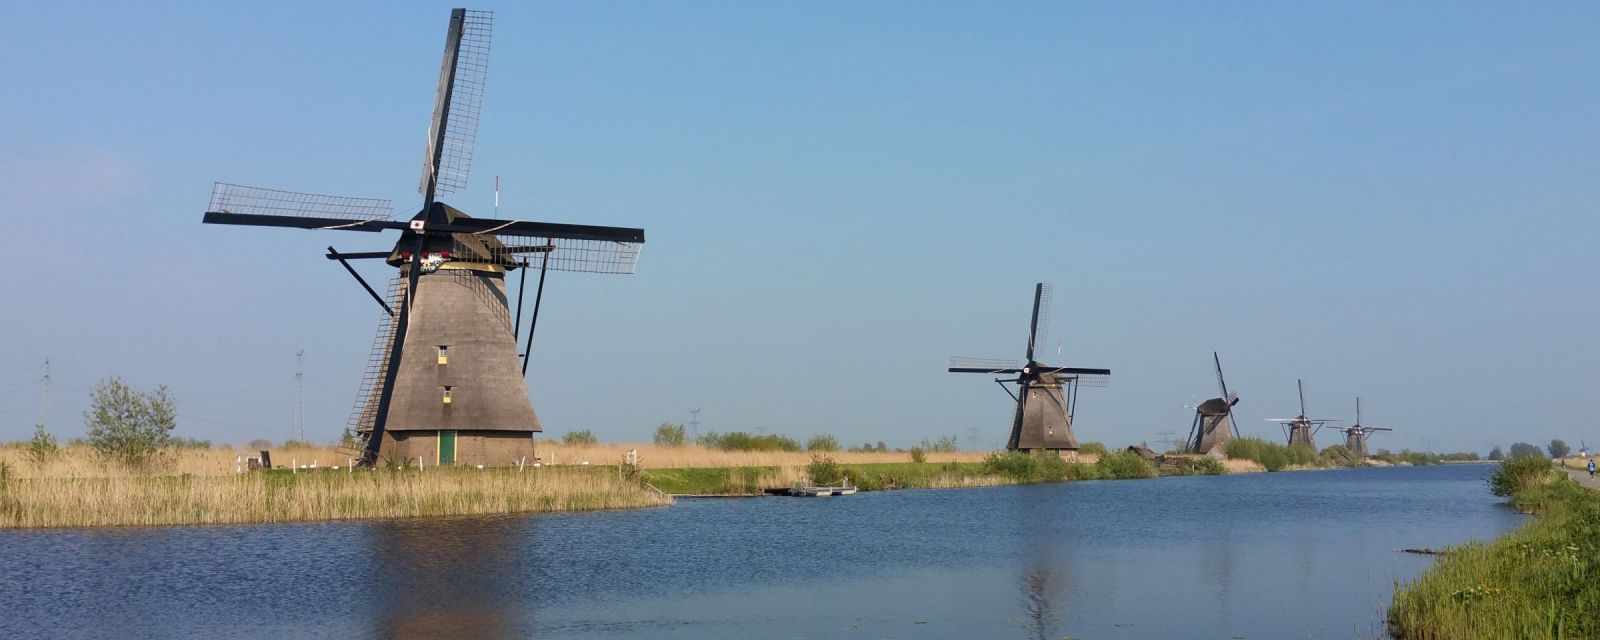 The Windmills of Kinderdijk 